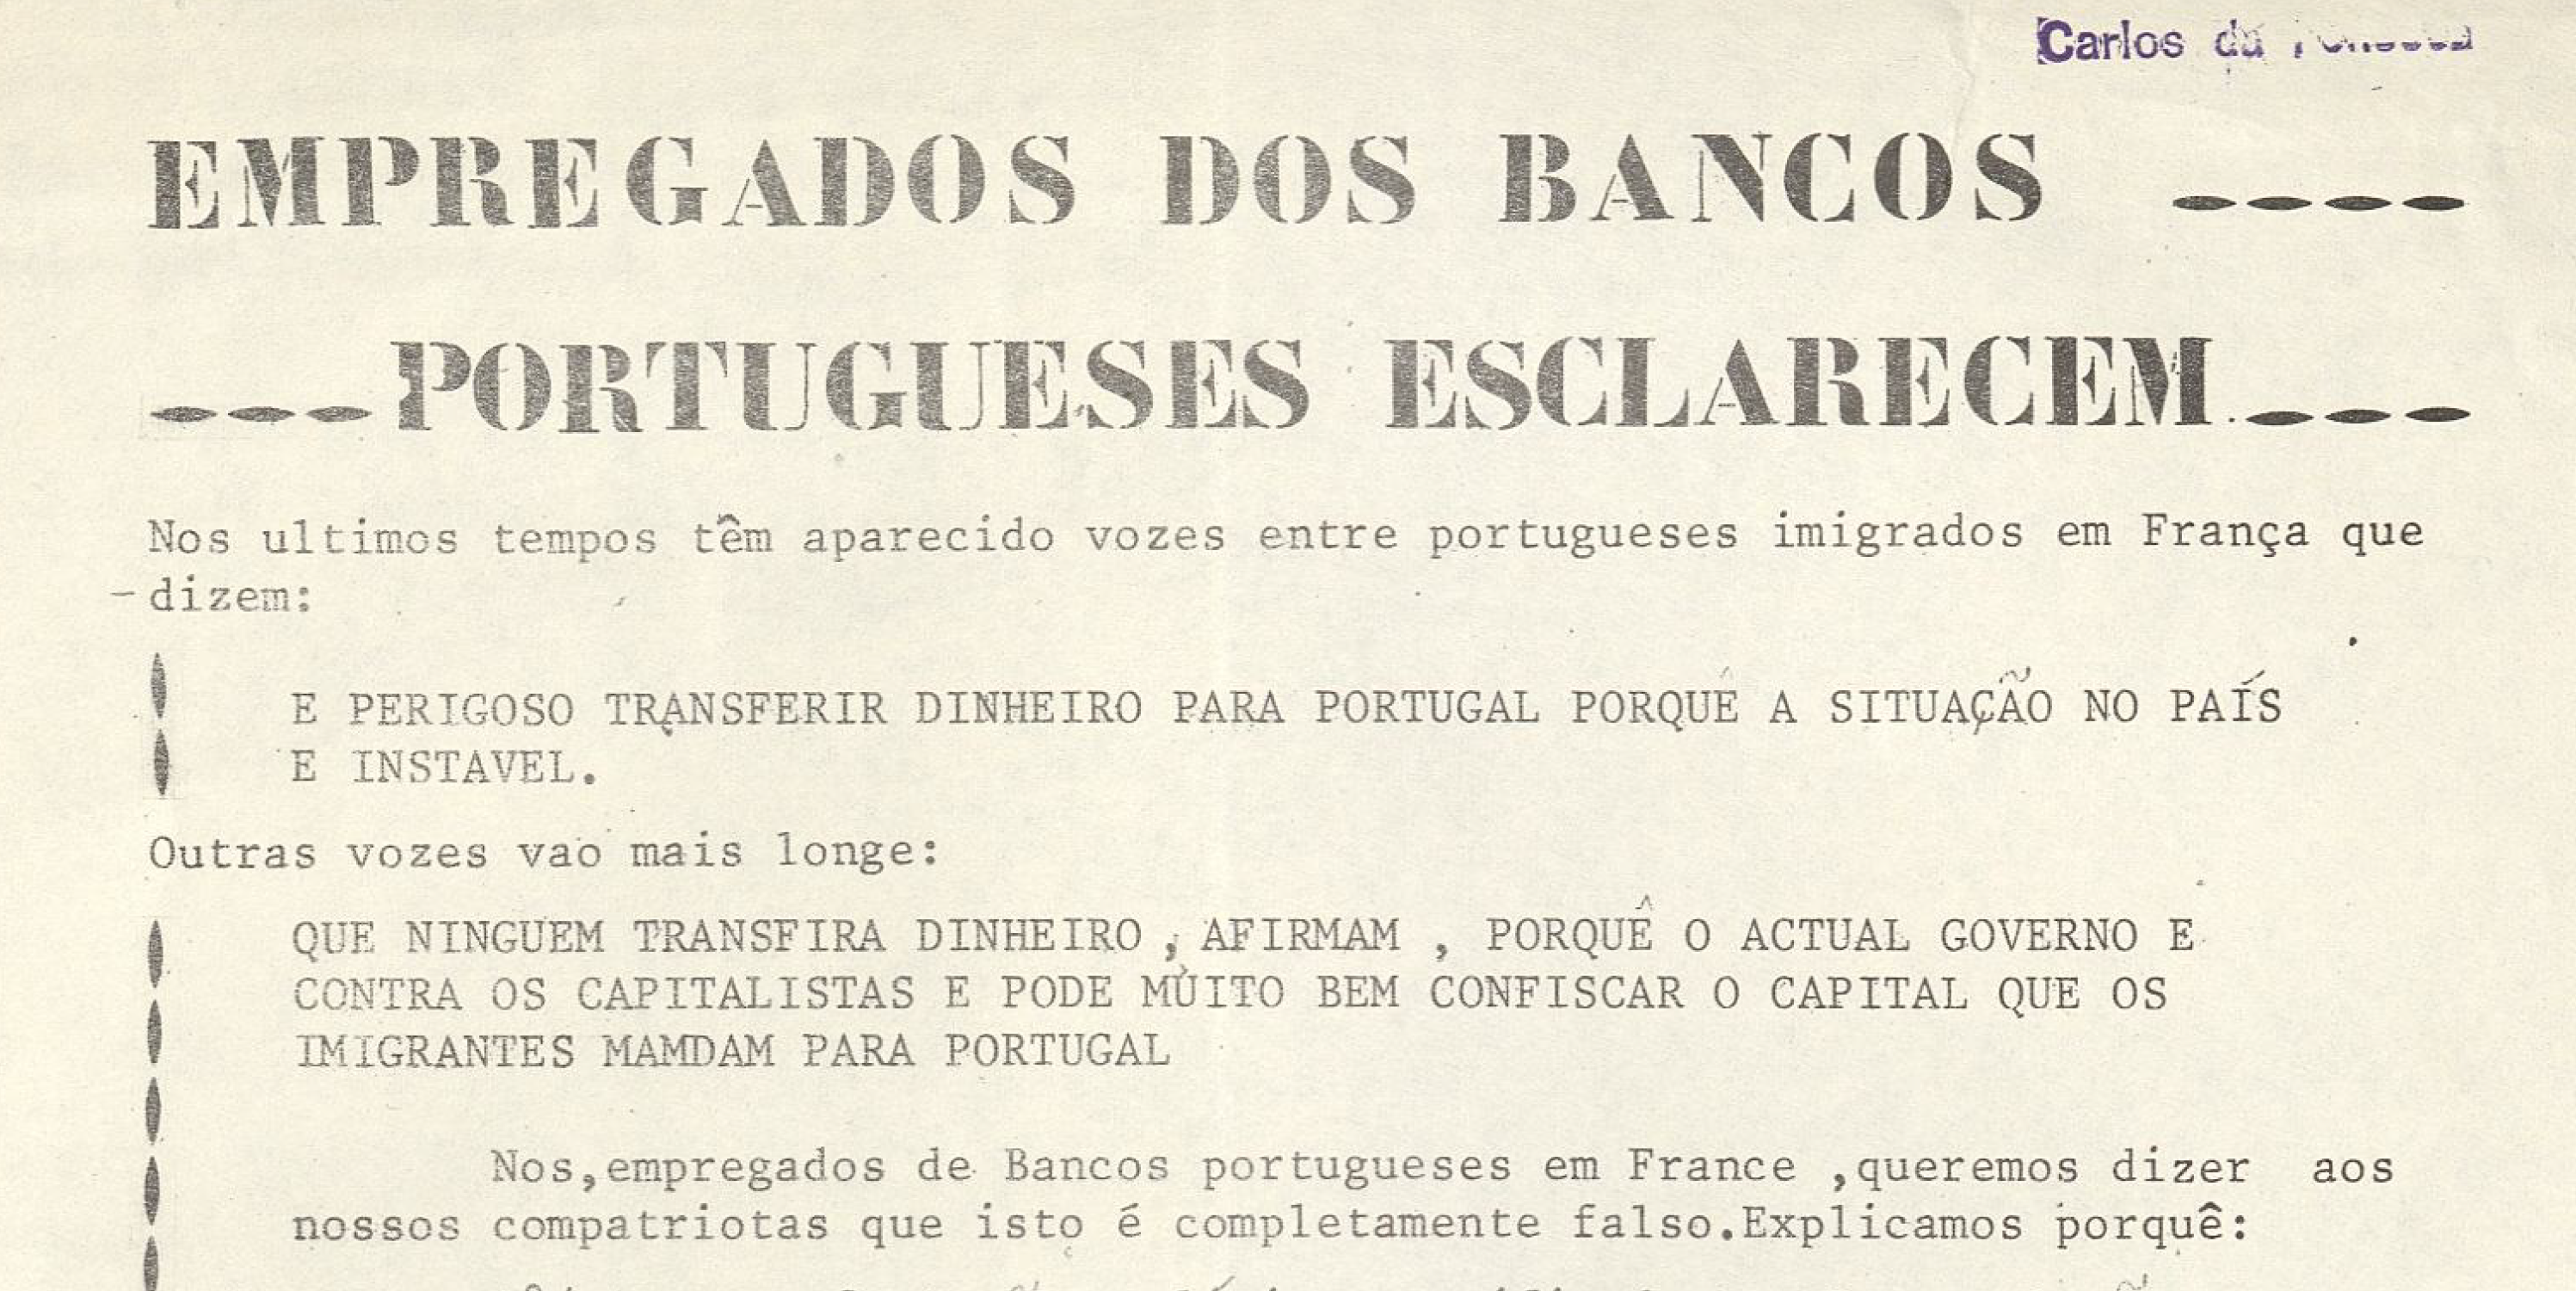 Empregados dos Bancos Portugueses esclarecem